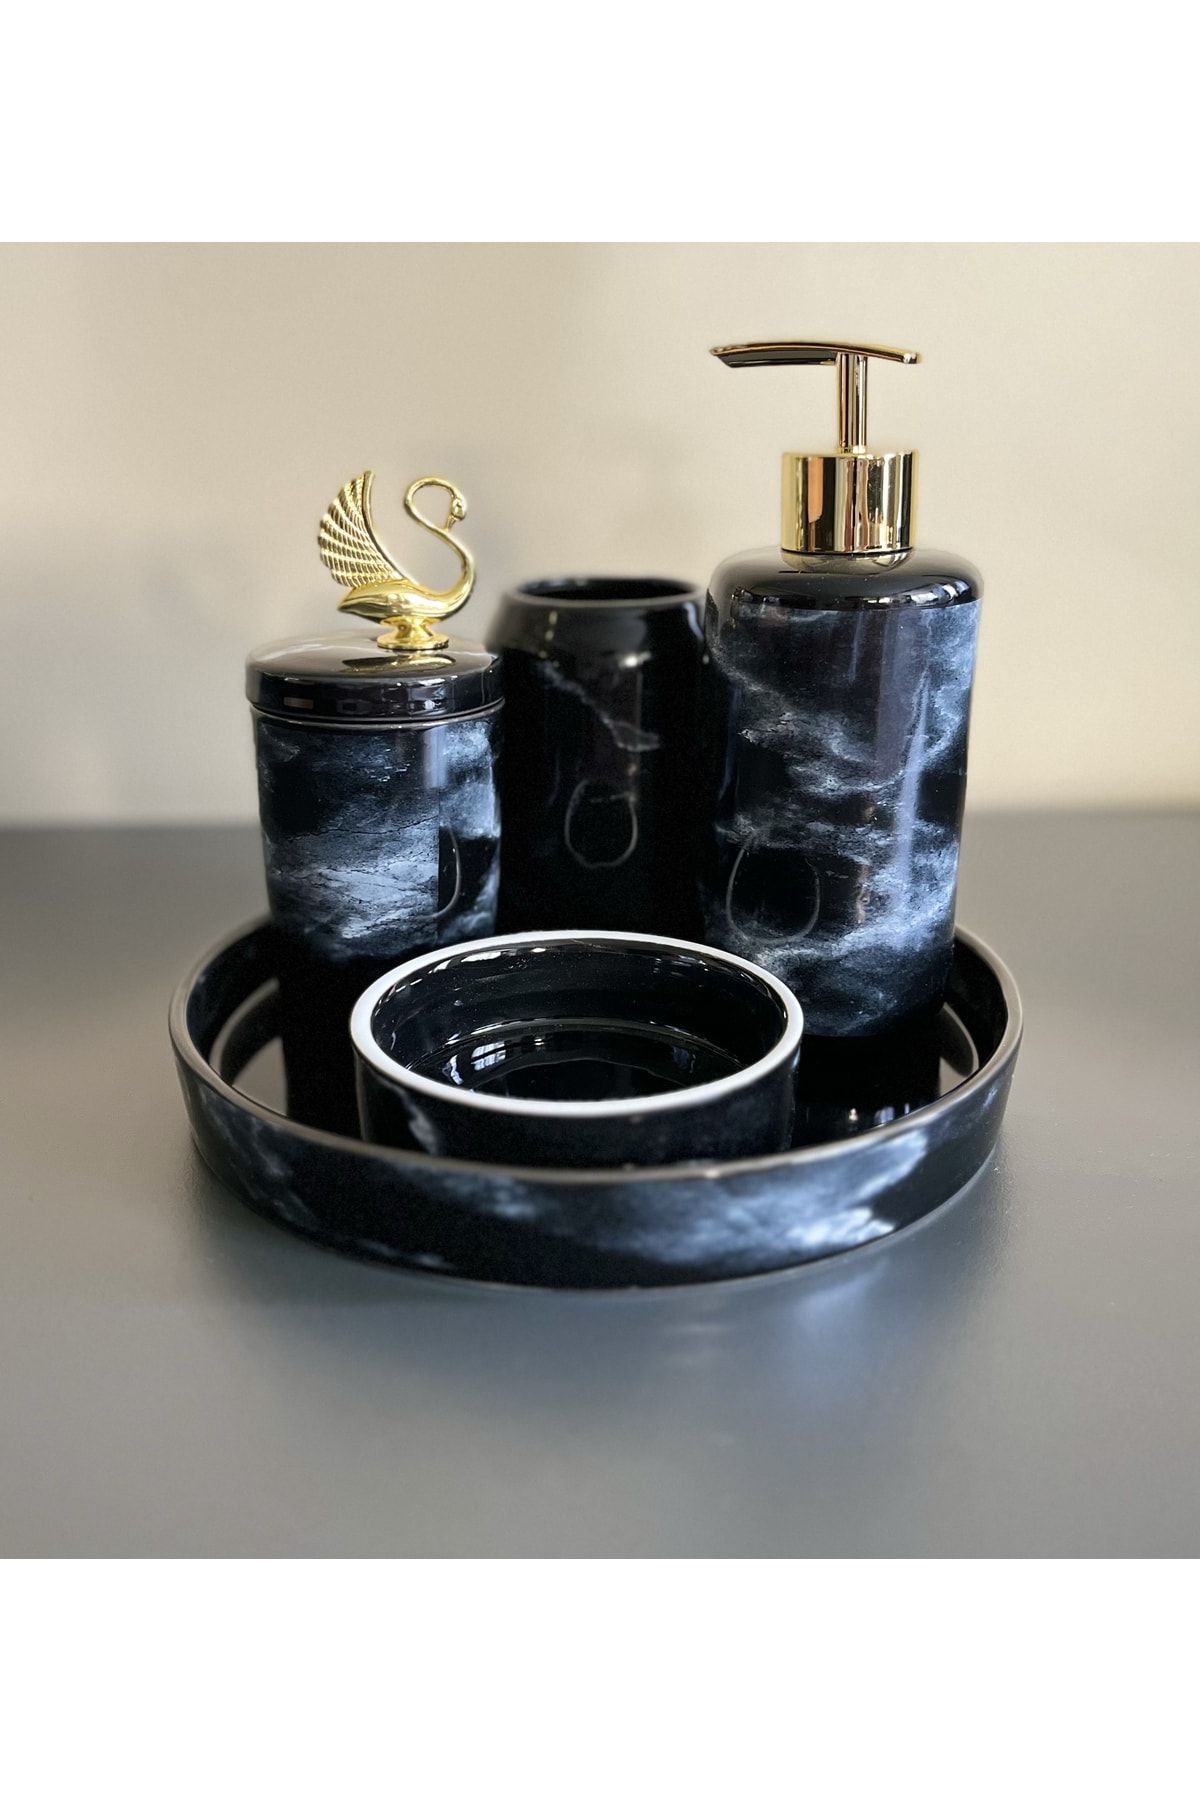 AROW Petri Siyah 5 Parça Porselen Banyo Takımı